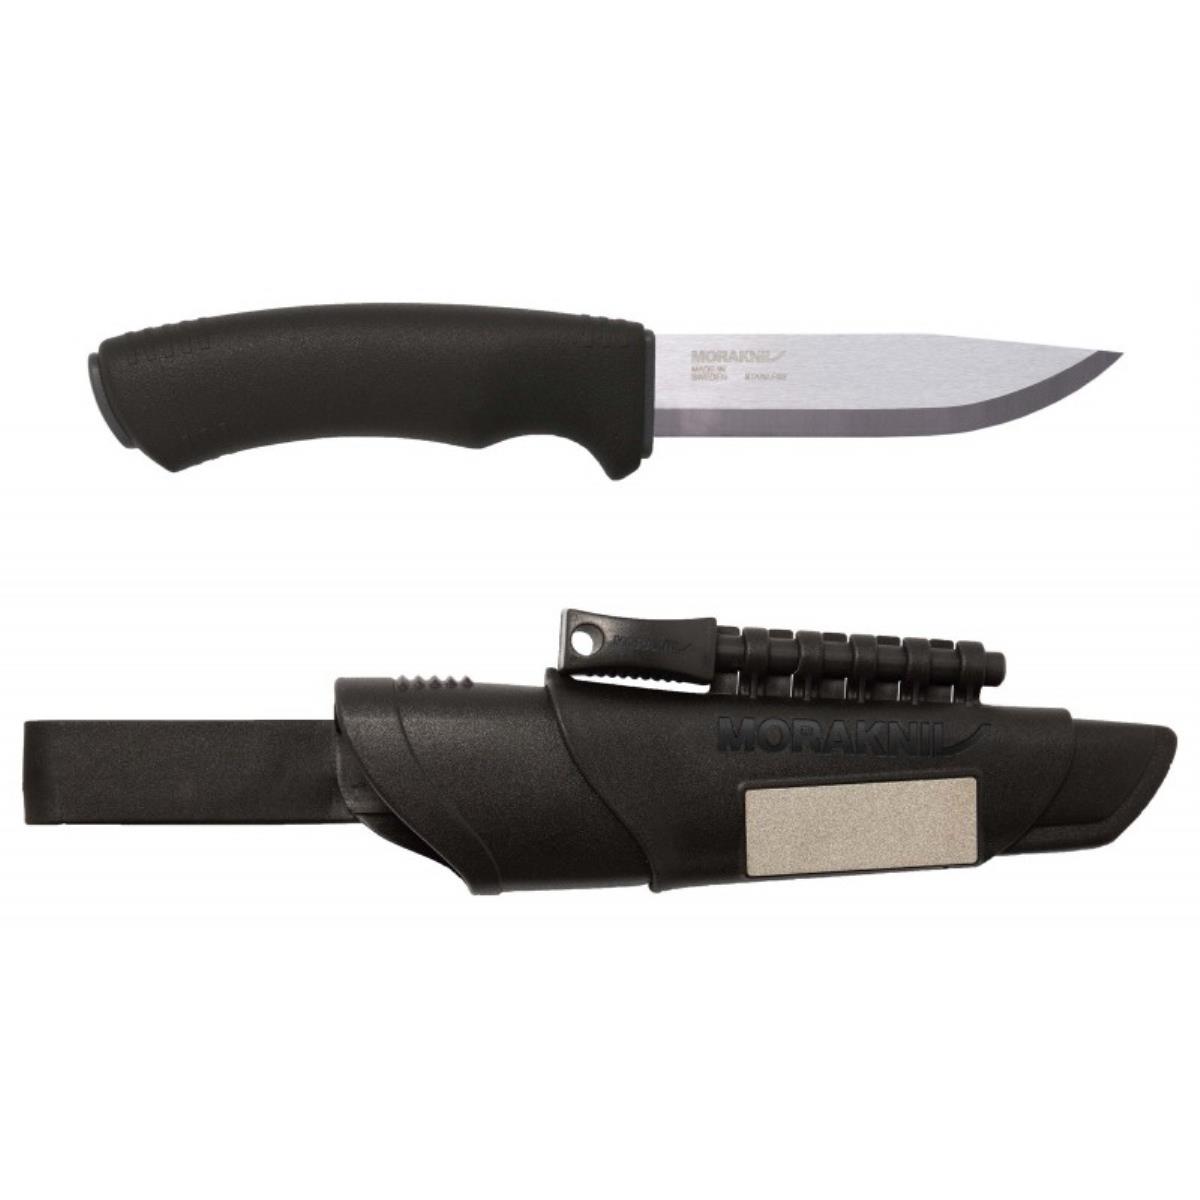 Нож Bushcraft Survival Black Ultimate Knife (11835) Morakniv нож flex 12248 morakniv